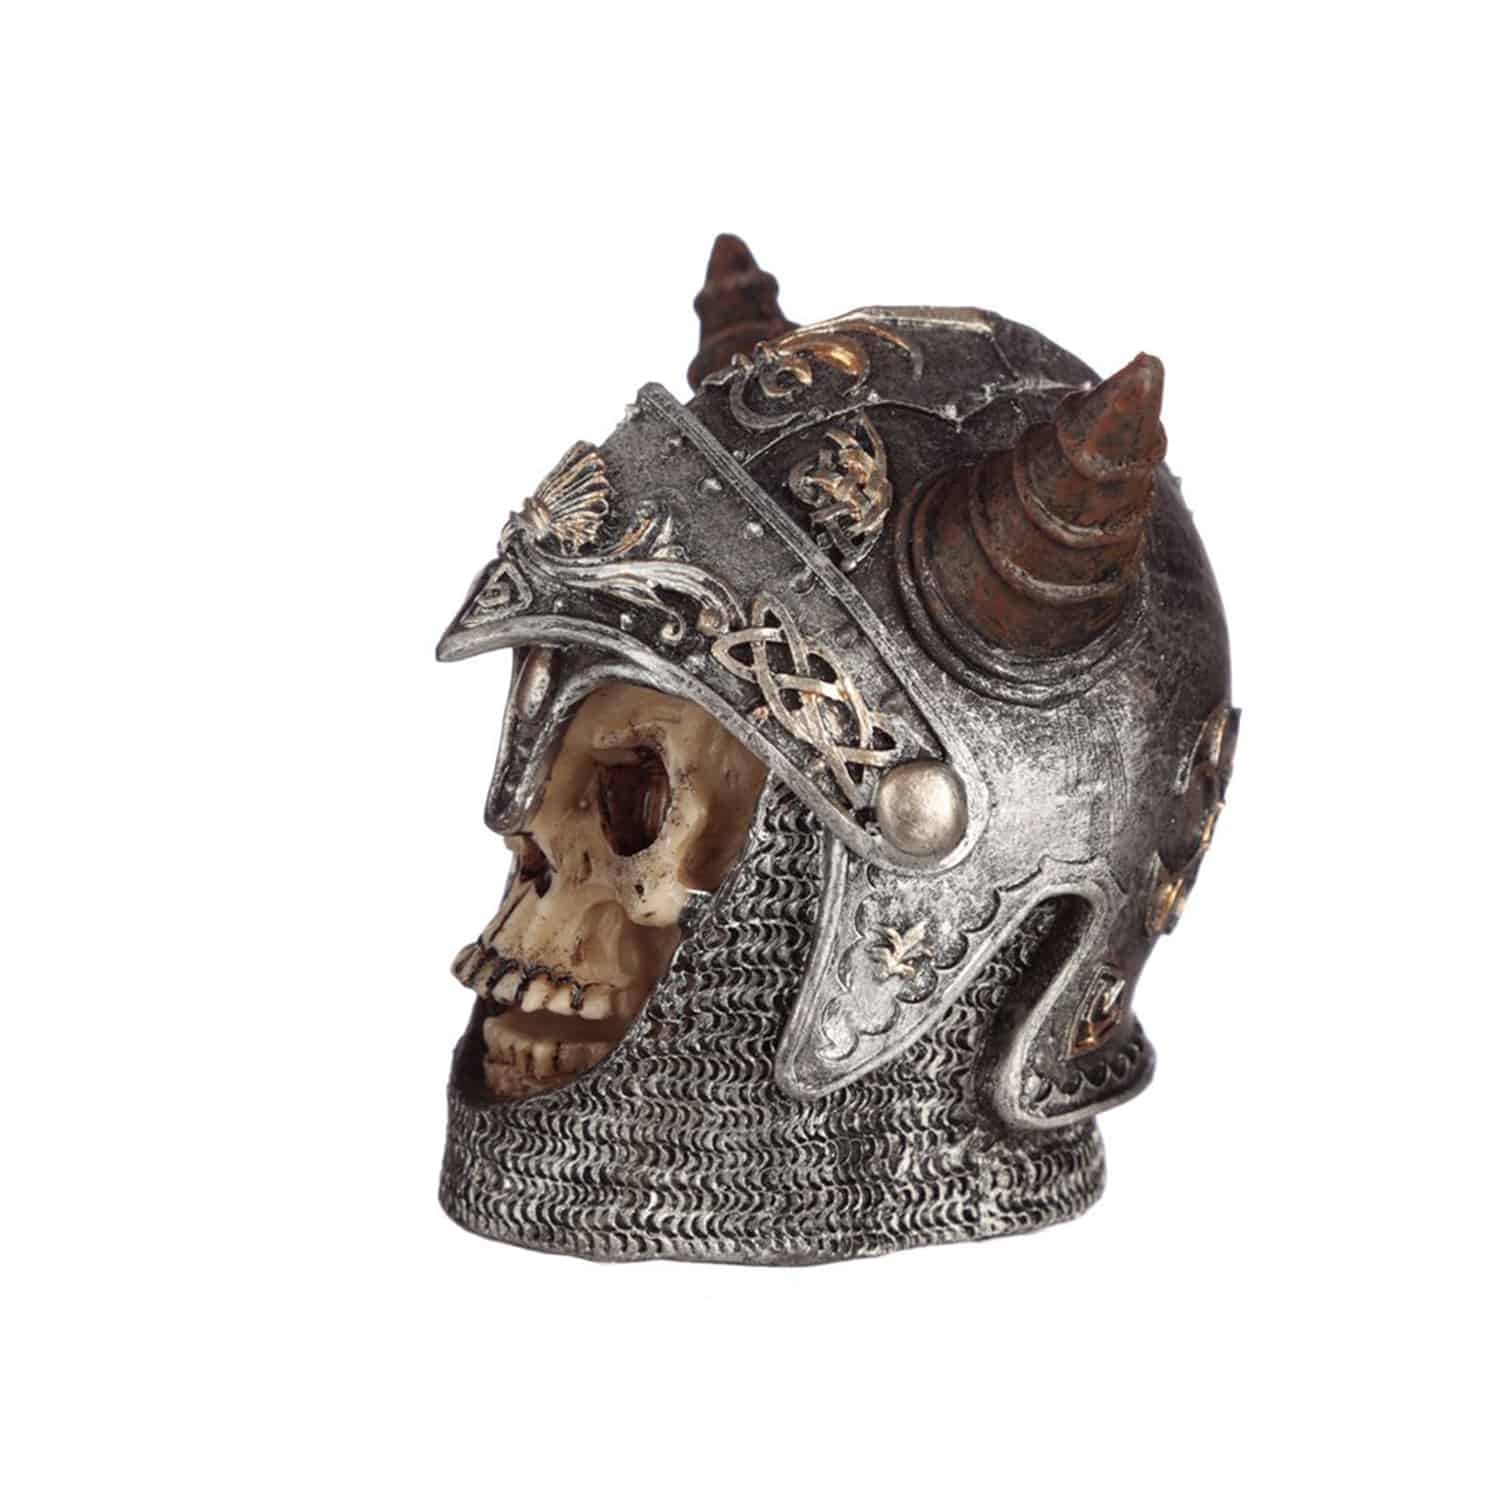 Skull Wearing Medieval Horned Helmet